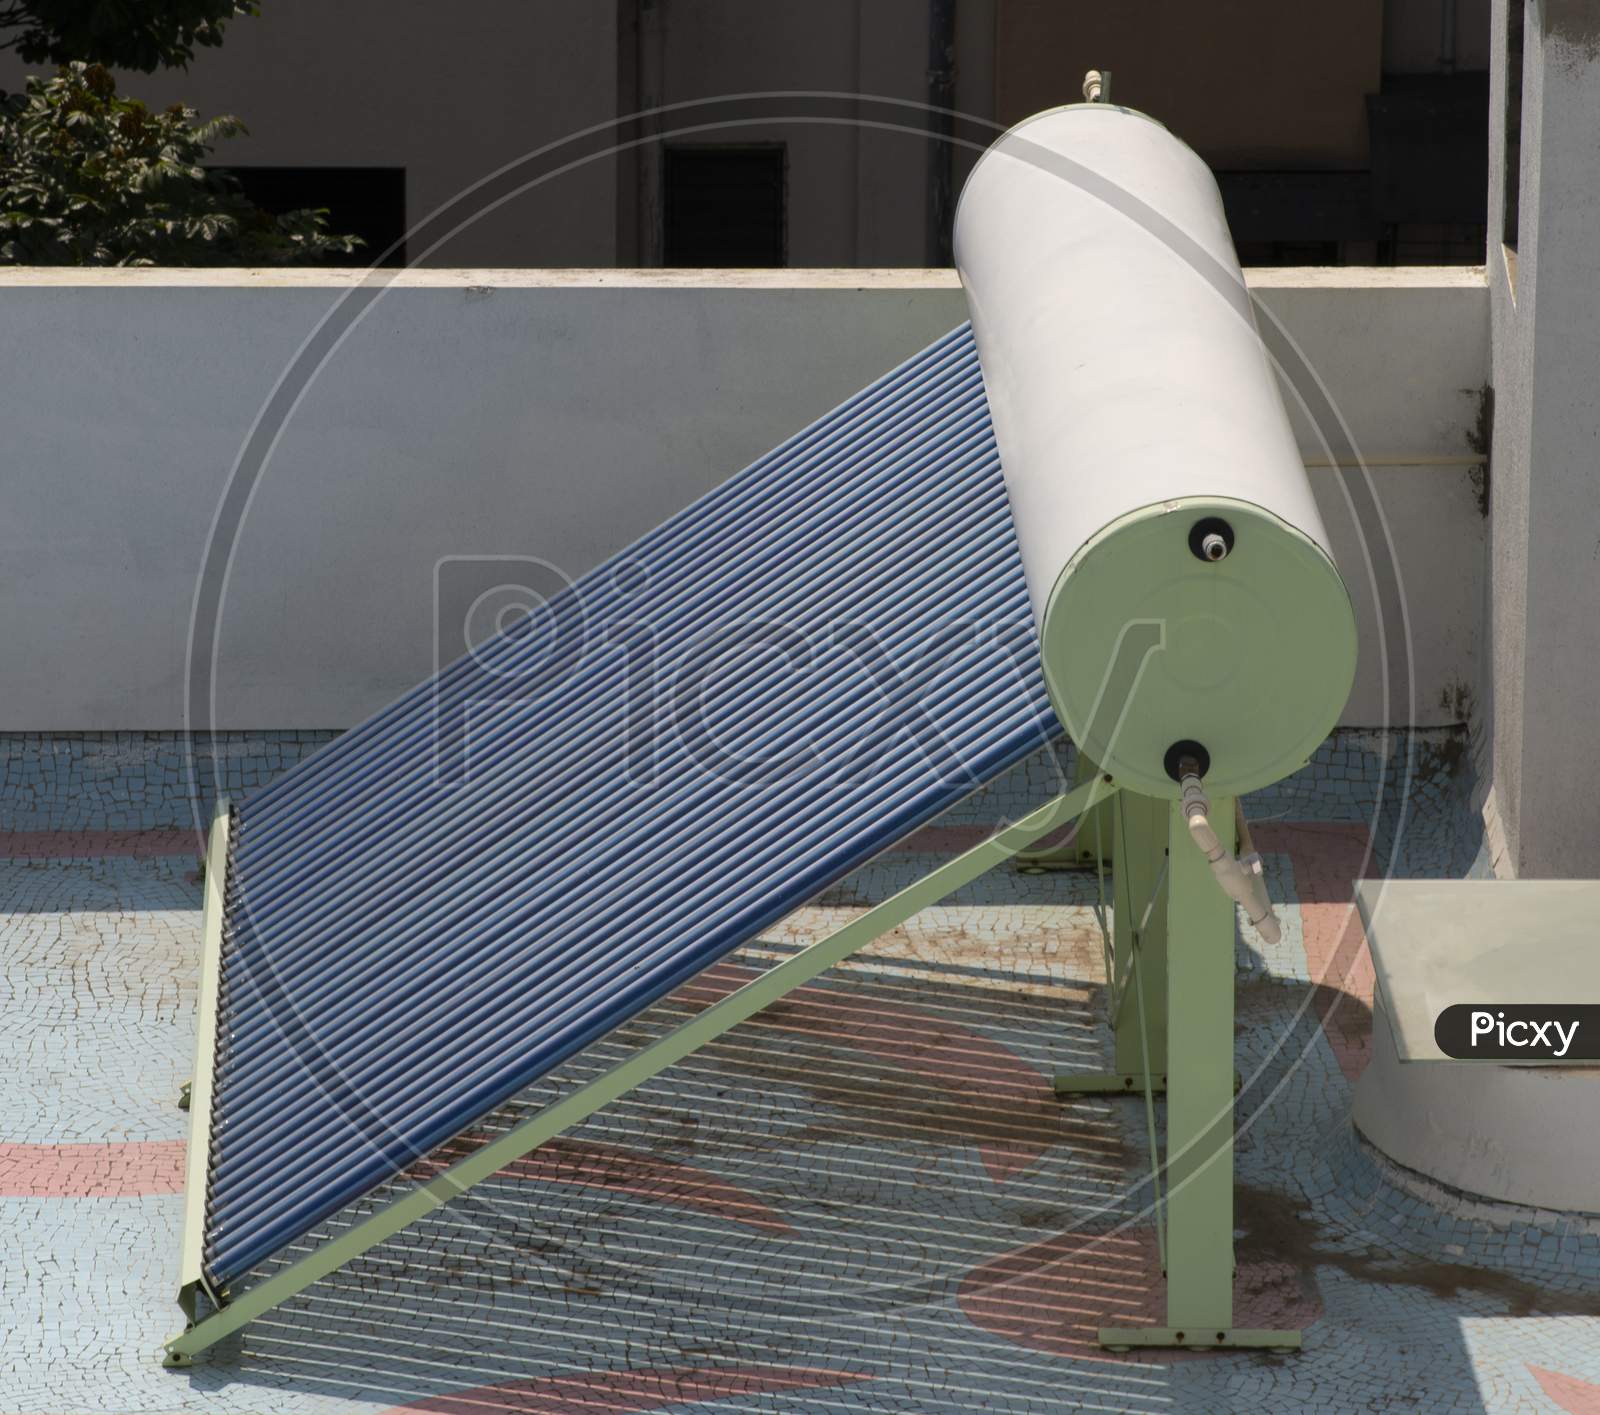 Solar Wate Heater Installed On Terrace.